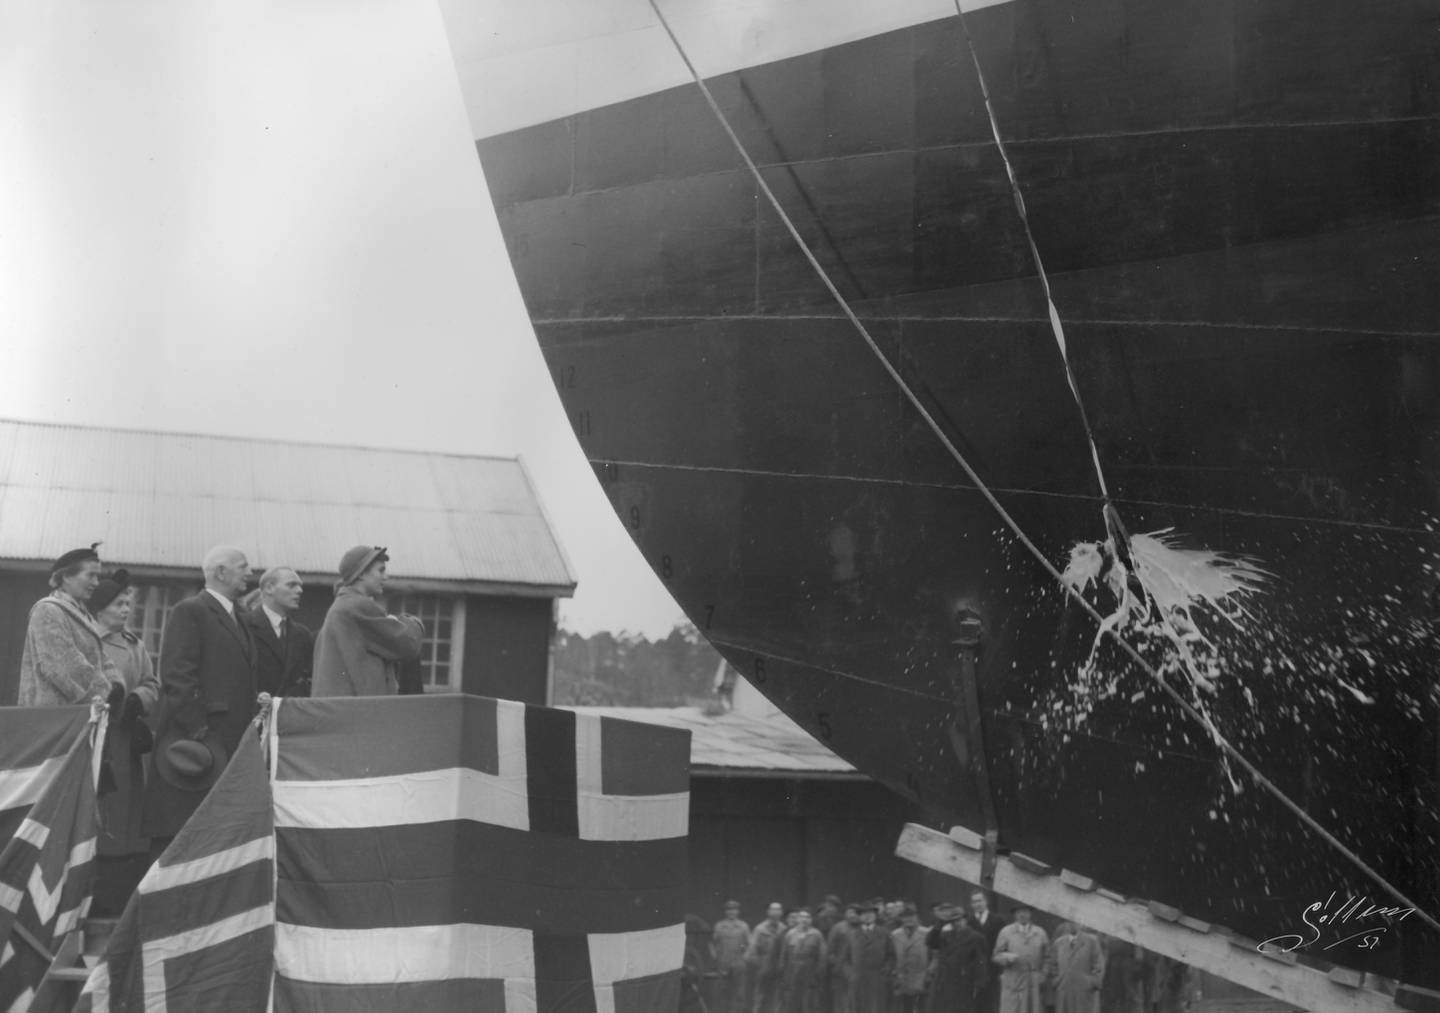 MS Vamos døpes og sjøsettes ved Glommens Mekaniske verksted (GMV) på Kråkerøy i Fredrikstad i 1951.